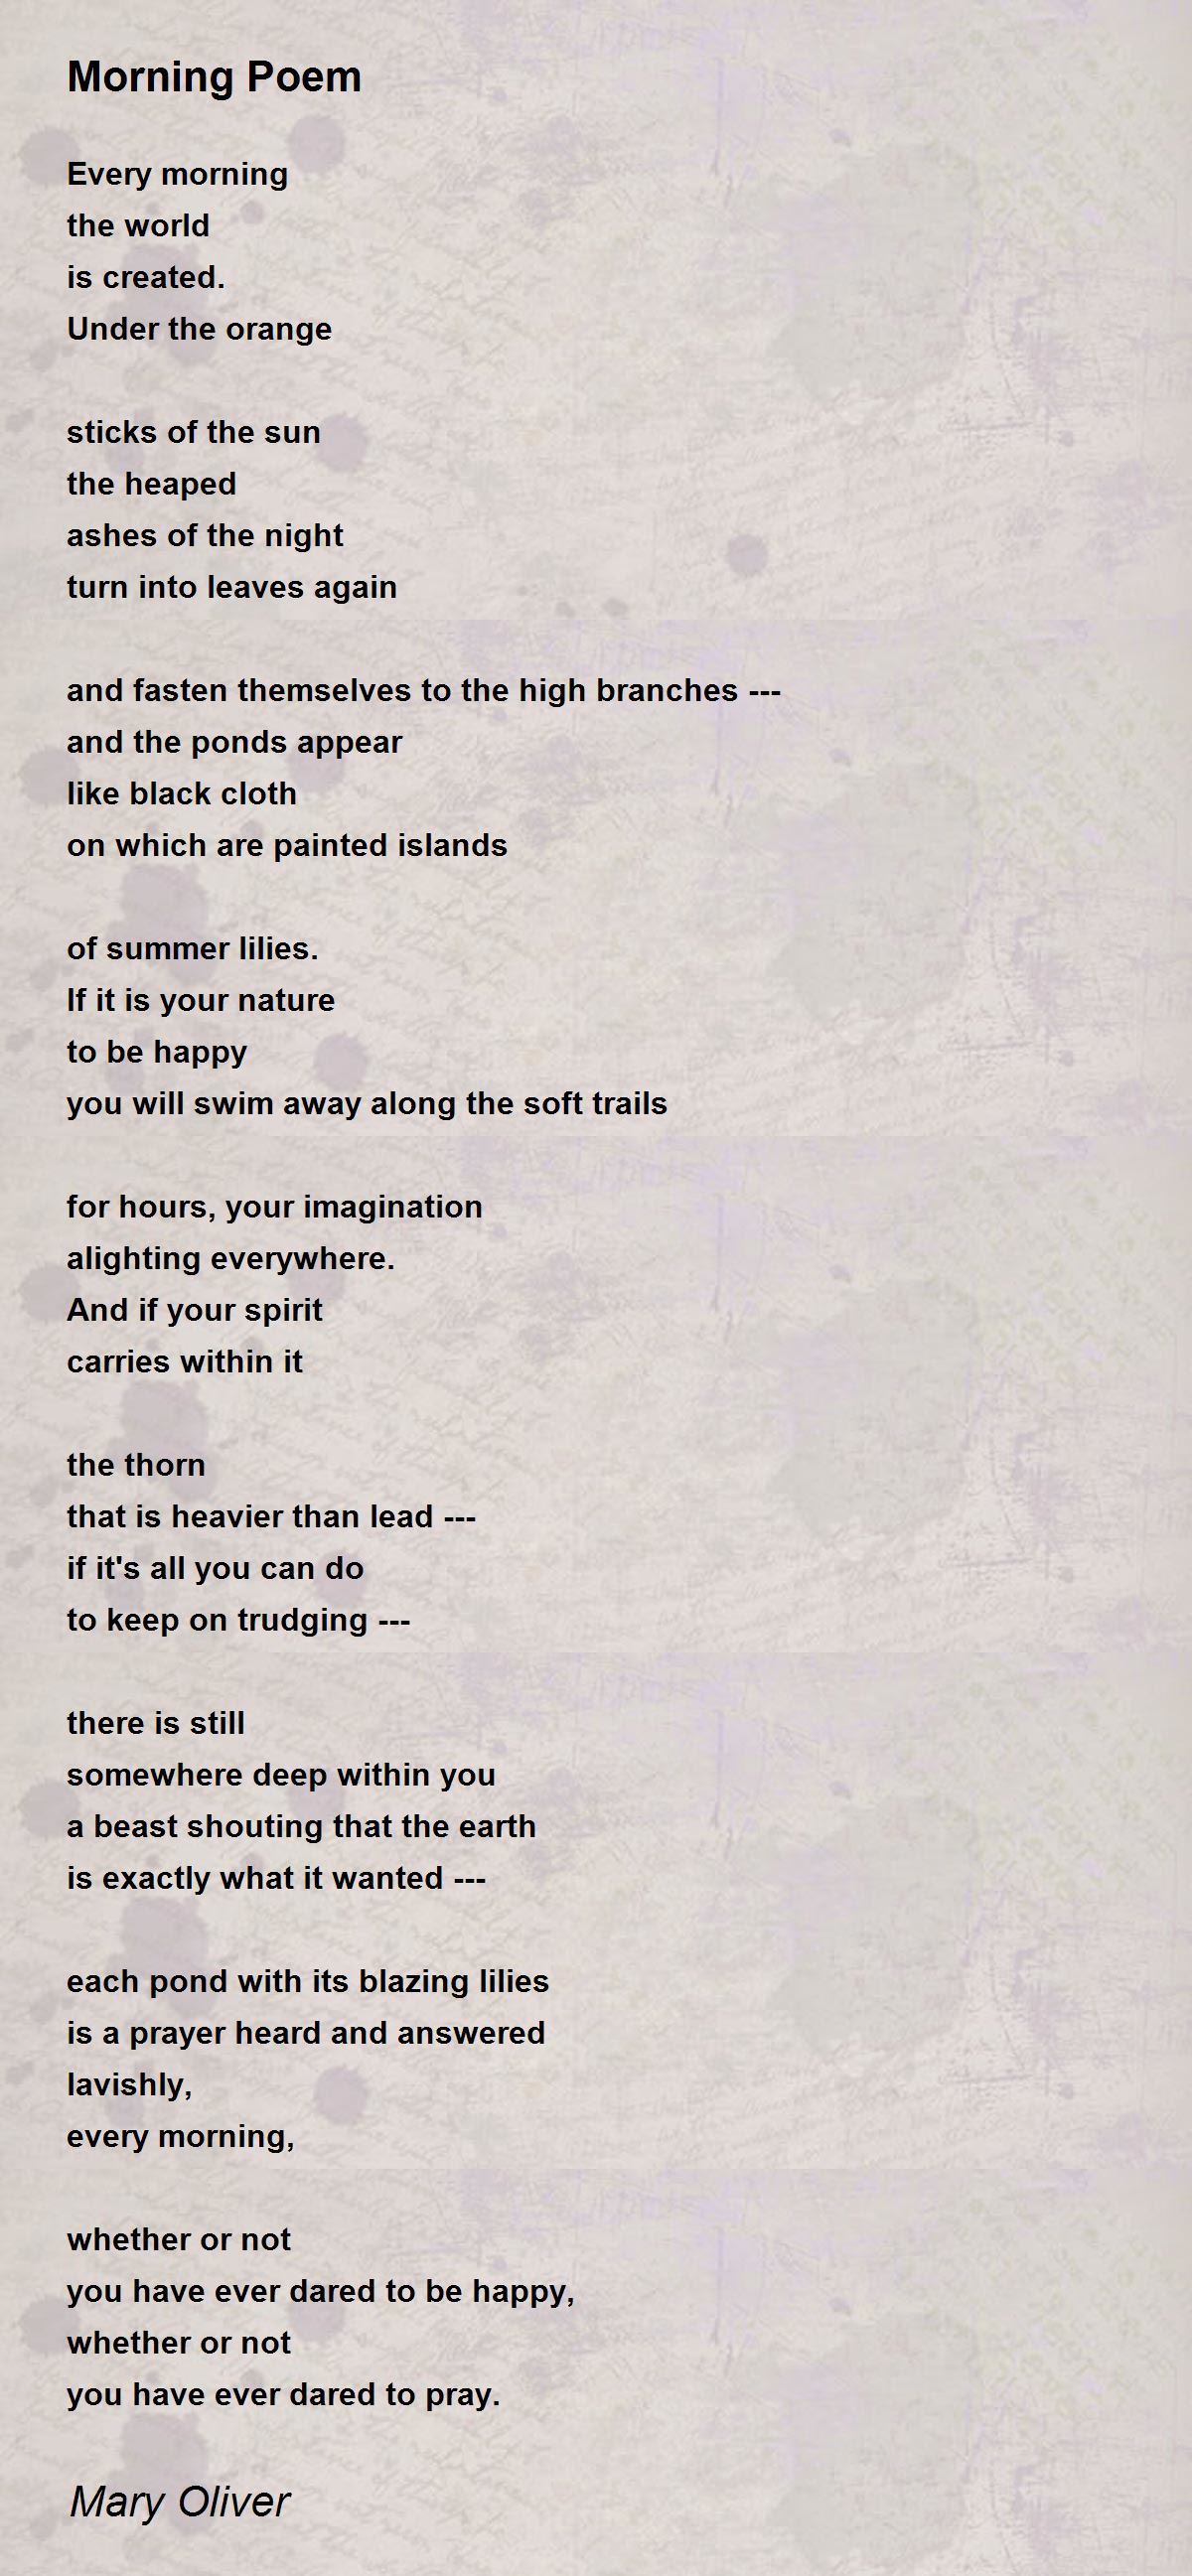 Morning Poem Poem by Mary Oliver - Poem Hunter